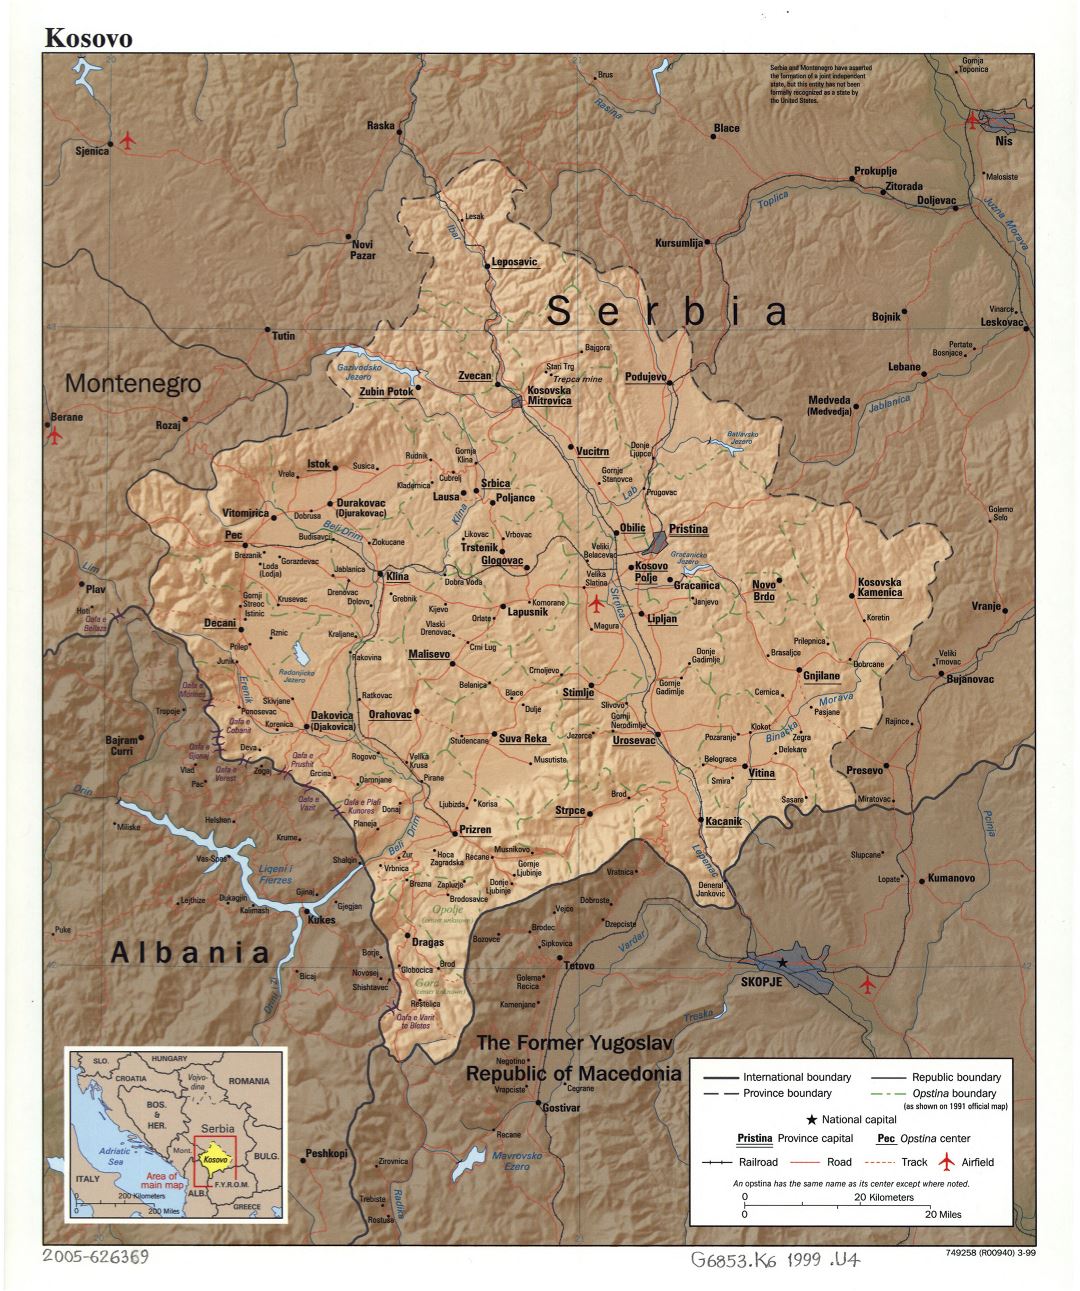 Grande detallada mapa política y administrativa de Kosovo con alivio, carreteras, ferrocarriles, aeropuertos y ciudades - 1999